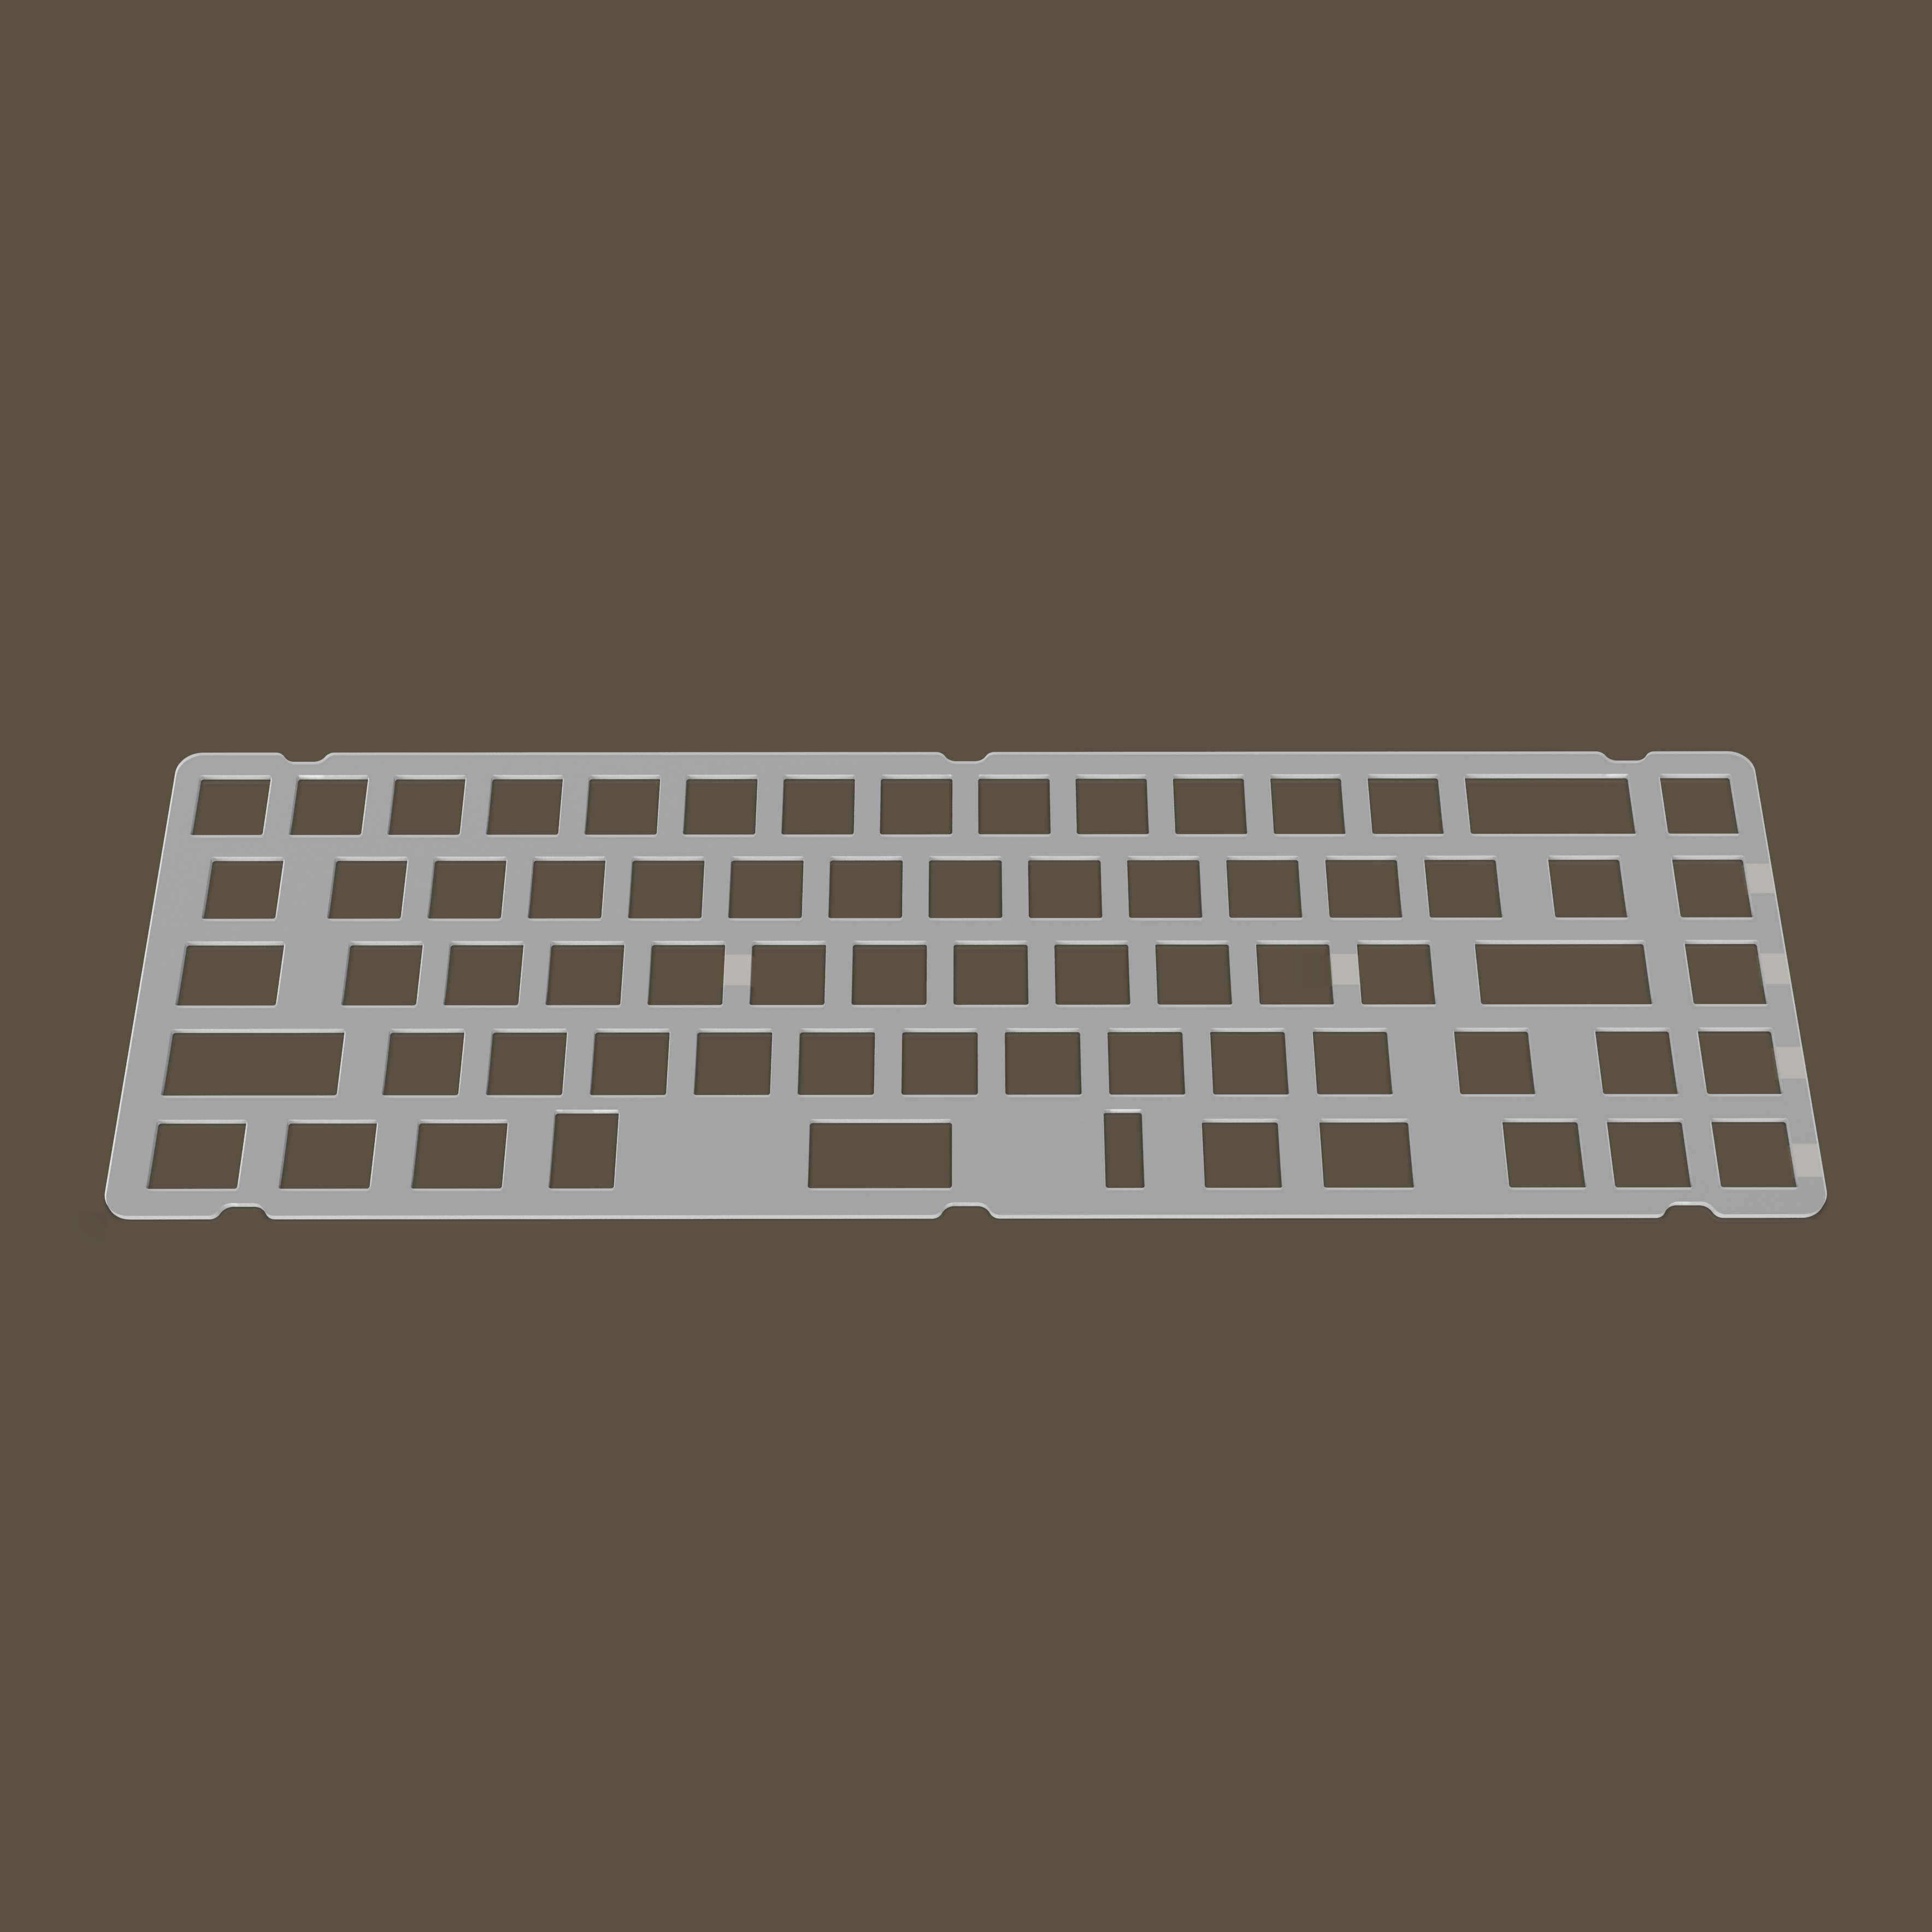 Choice65 Keyboard Kit - Group-Buy